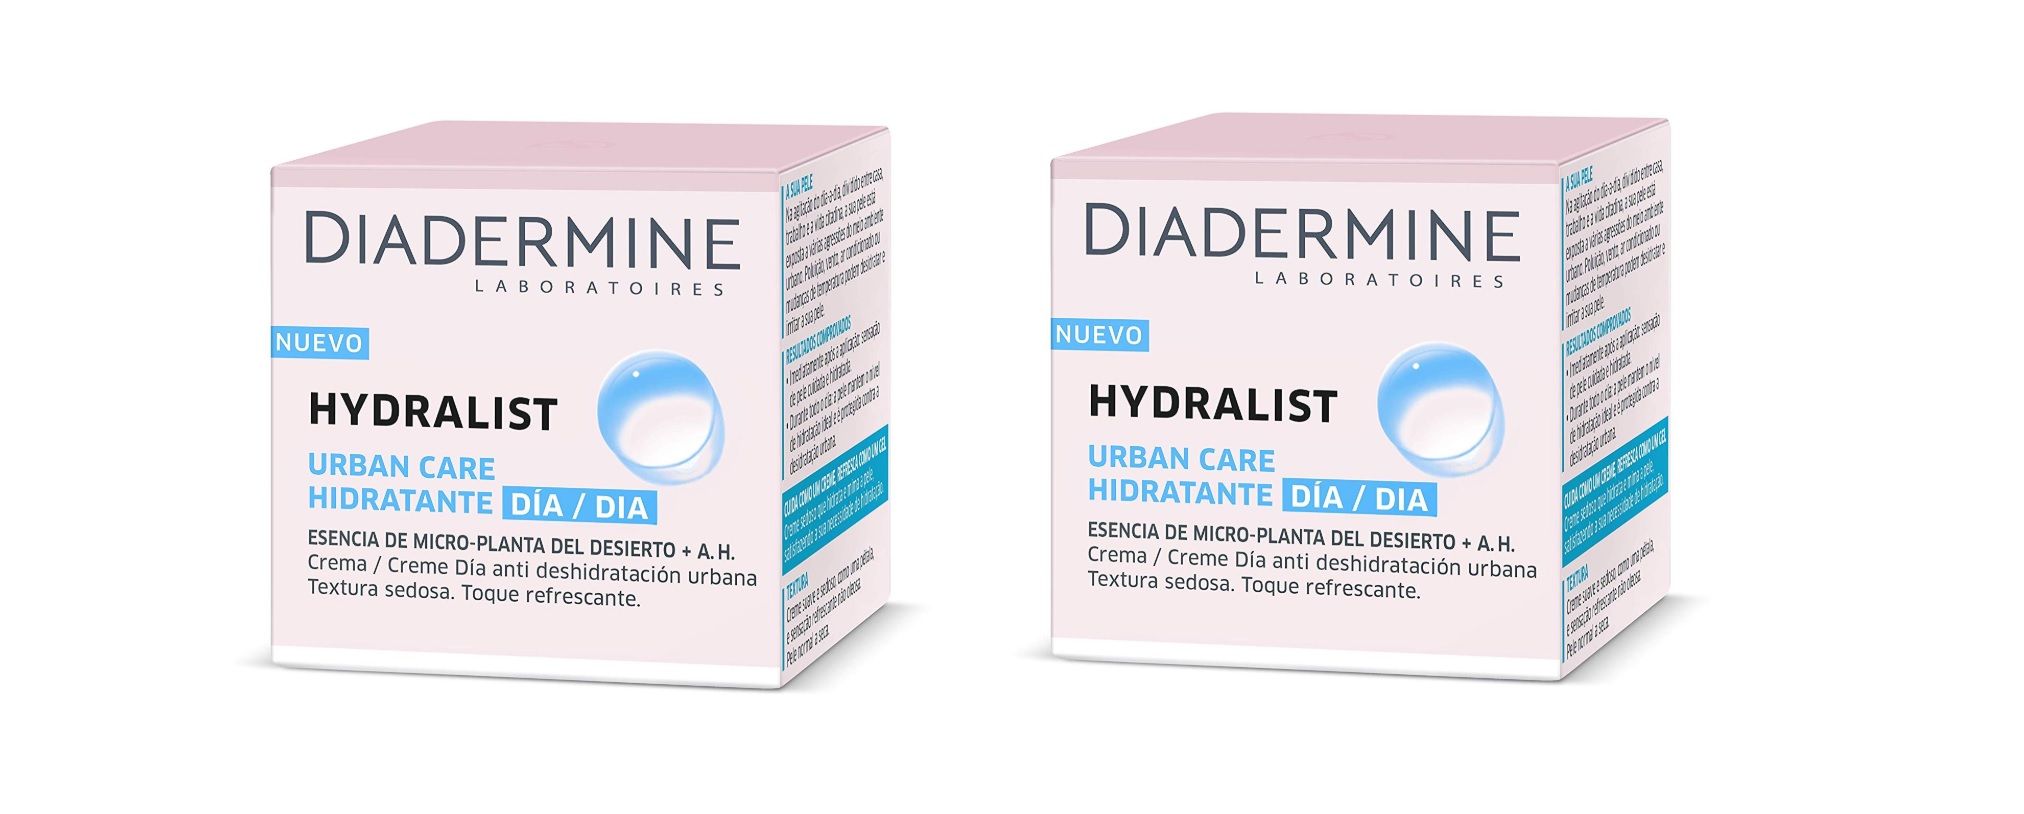 ¡Chollazo! 2 unidades de crema hidratante día Diadermine Hydralist por sólo 8,75€ (antes 17,50€)